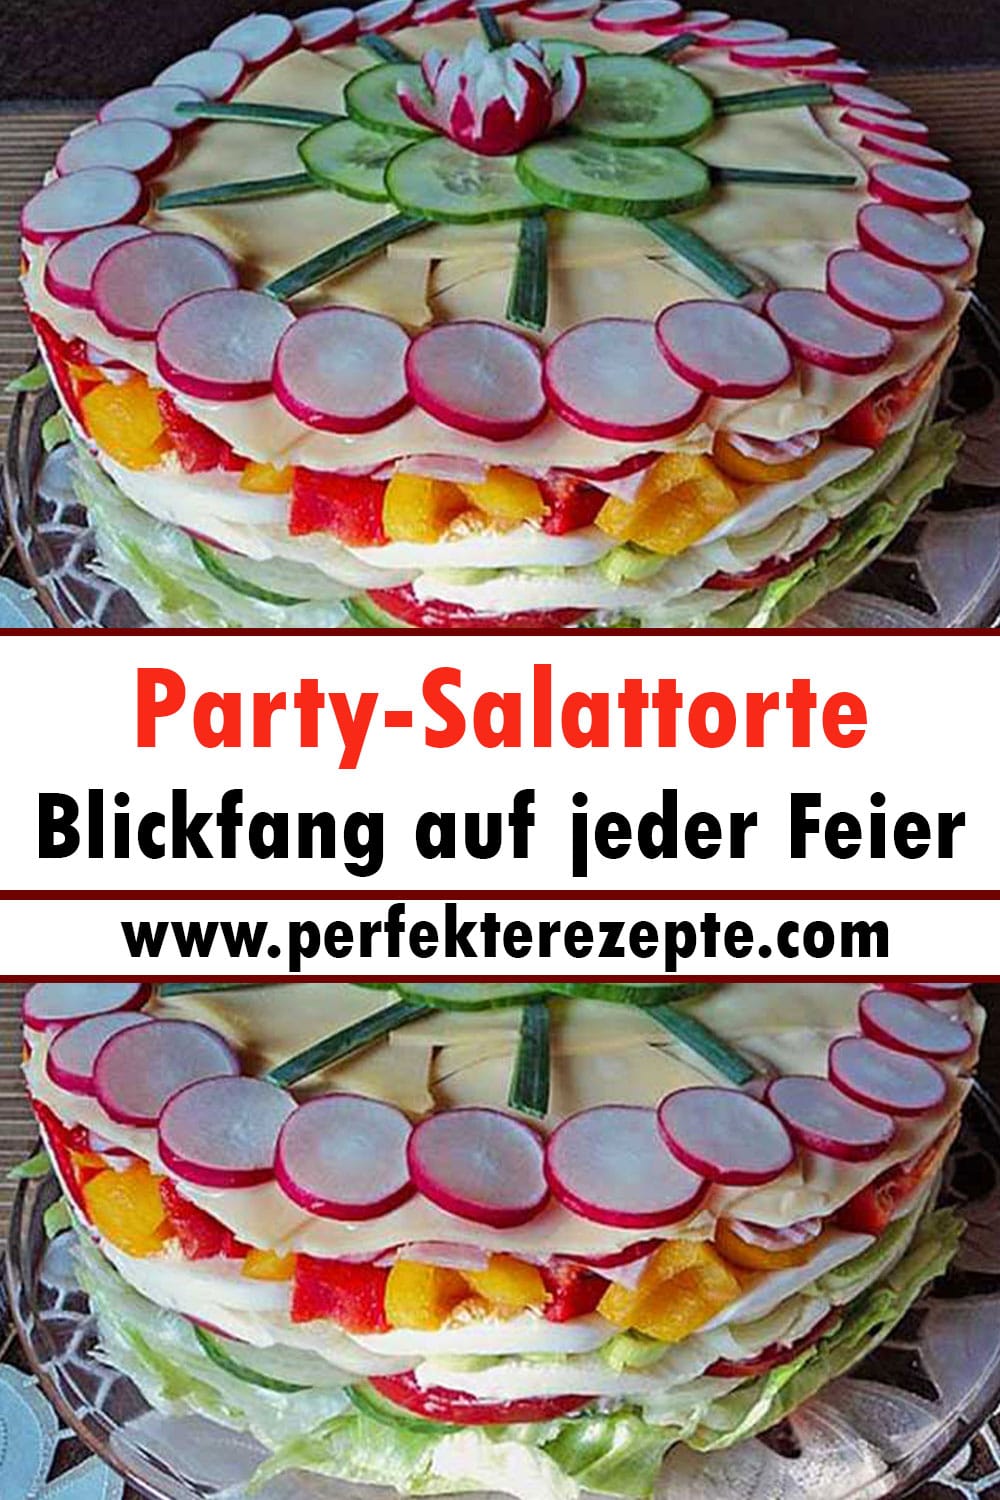 Party-Salattorte Rezept Blickfang auf jeder Feier